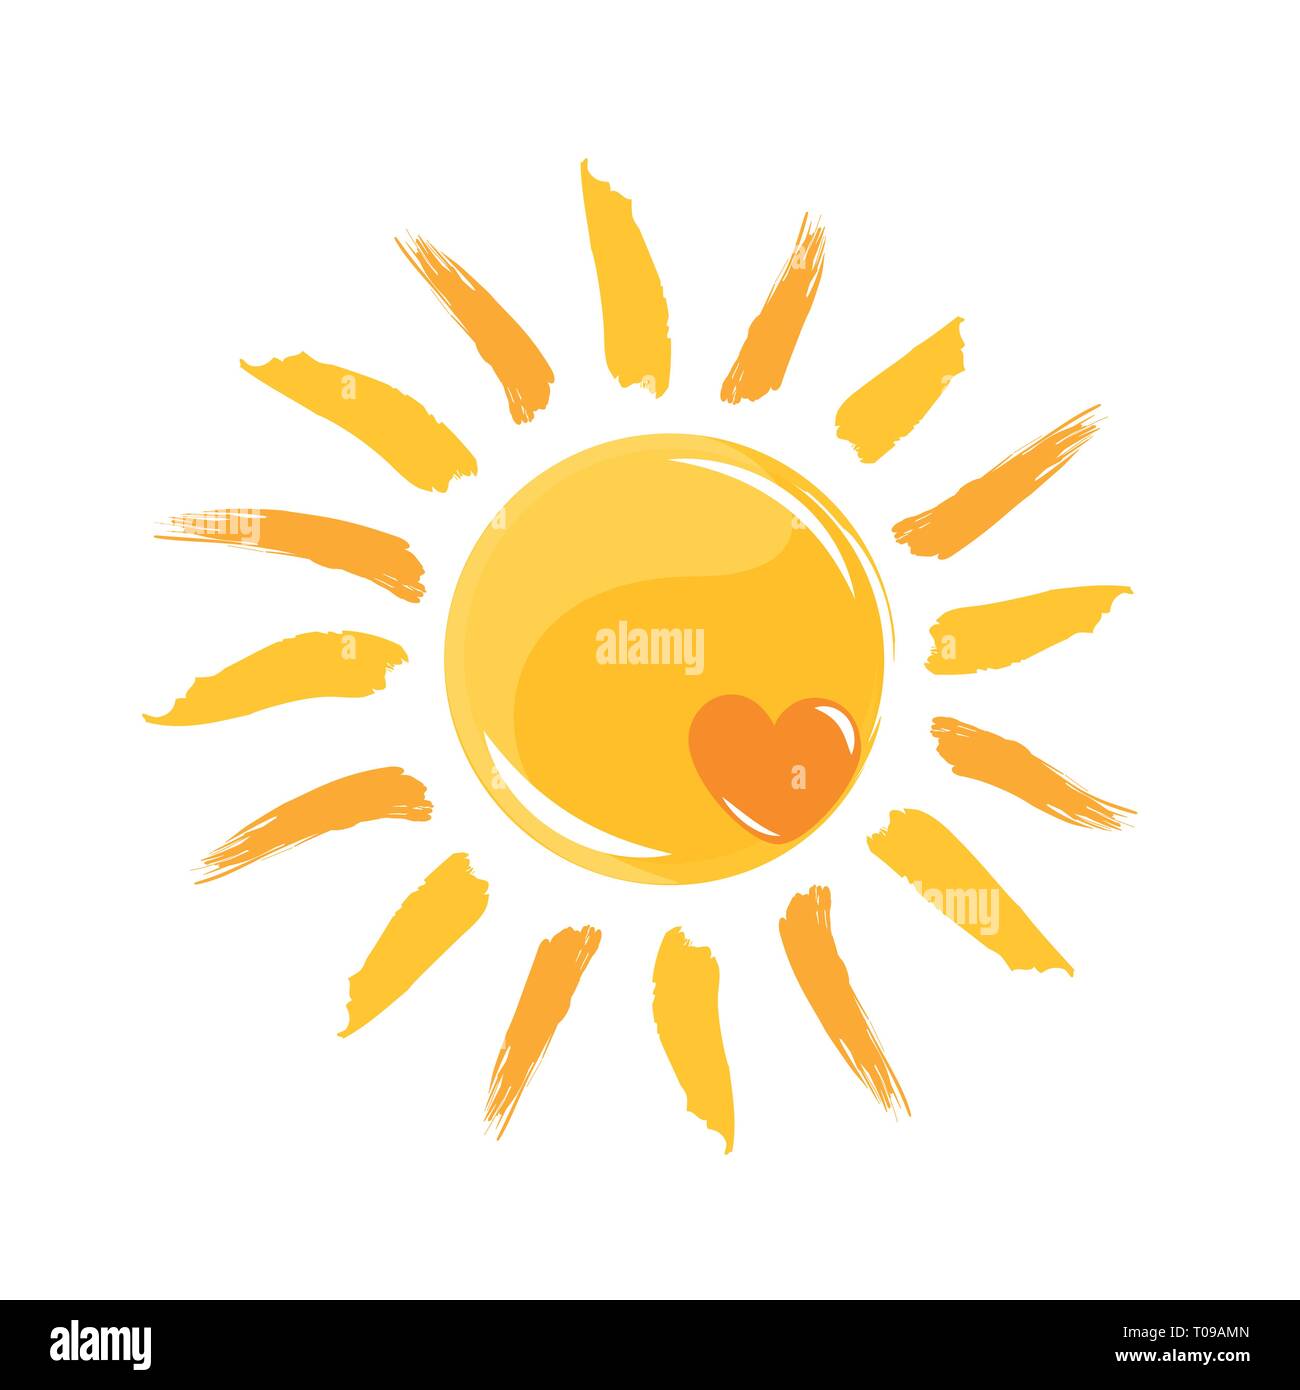 Liebe glänzende gelbe Sonne mit Herz Vektor-illustration EPS 10. Stock Vektor